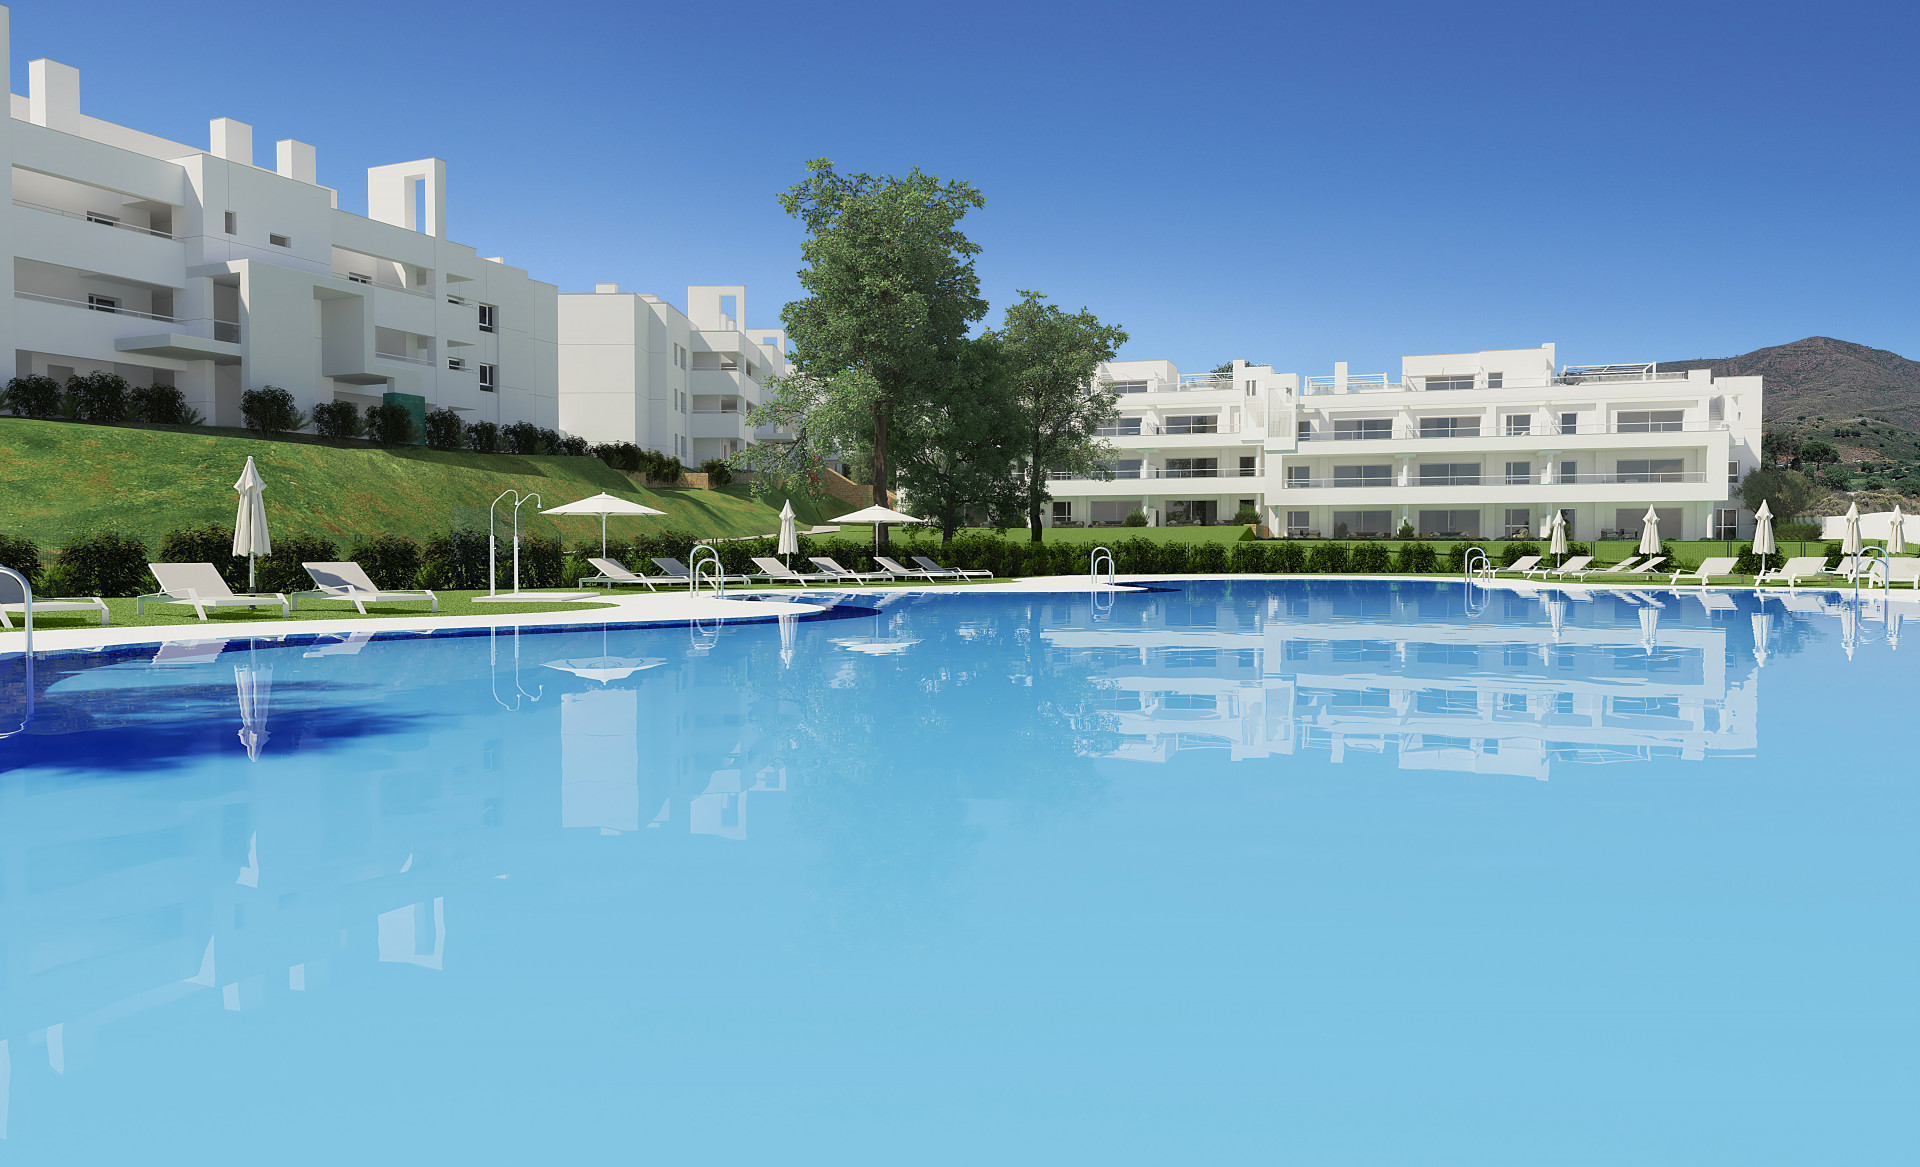 Ground floor apartment with 3 bedrooms in La Cala Golf Resort in Mijas | Image 2